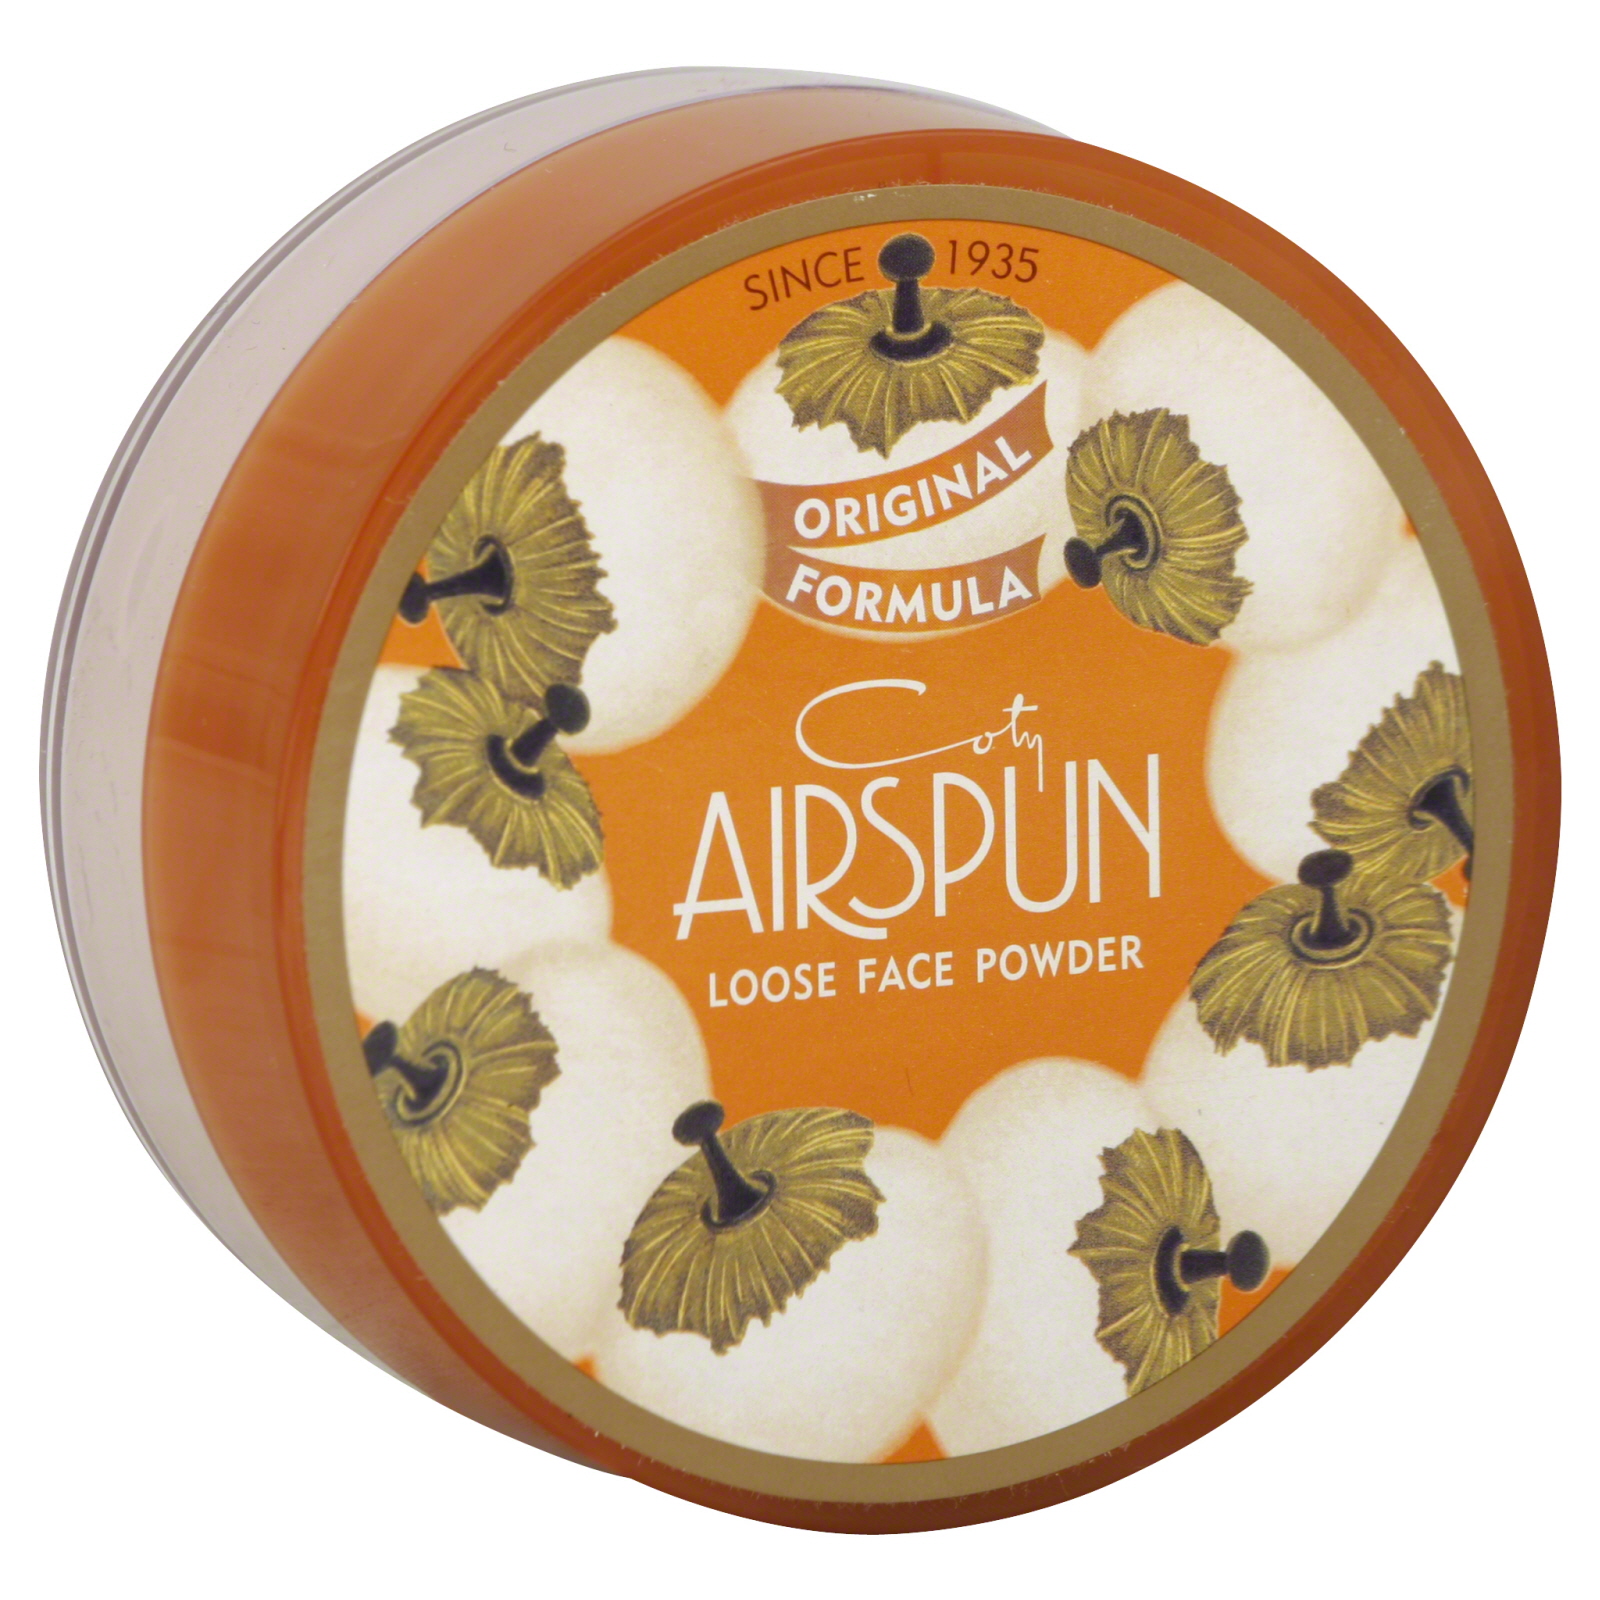 Coty Airspun Powder